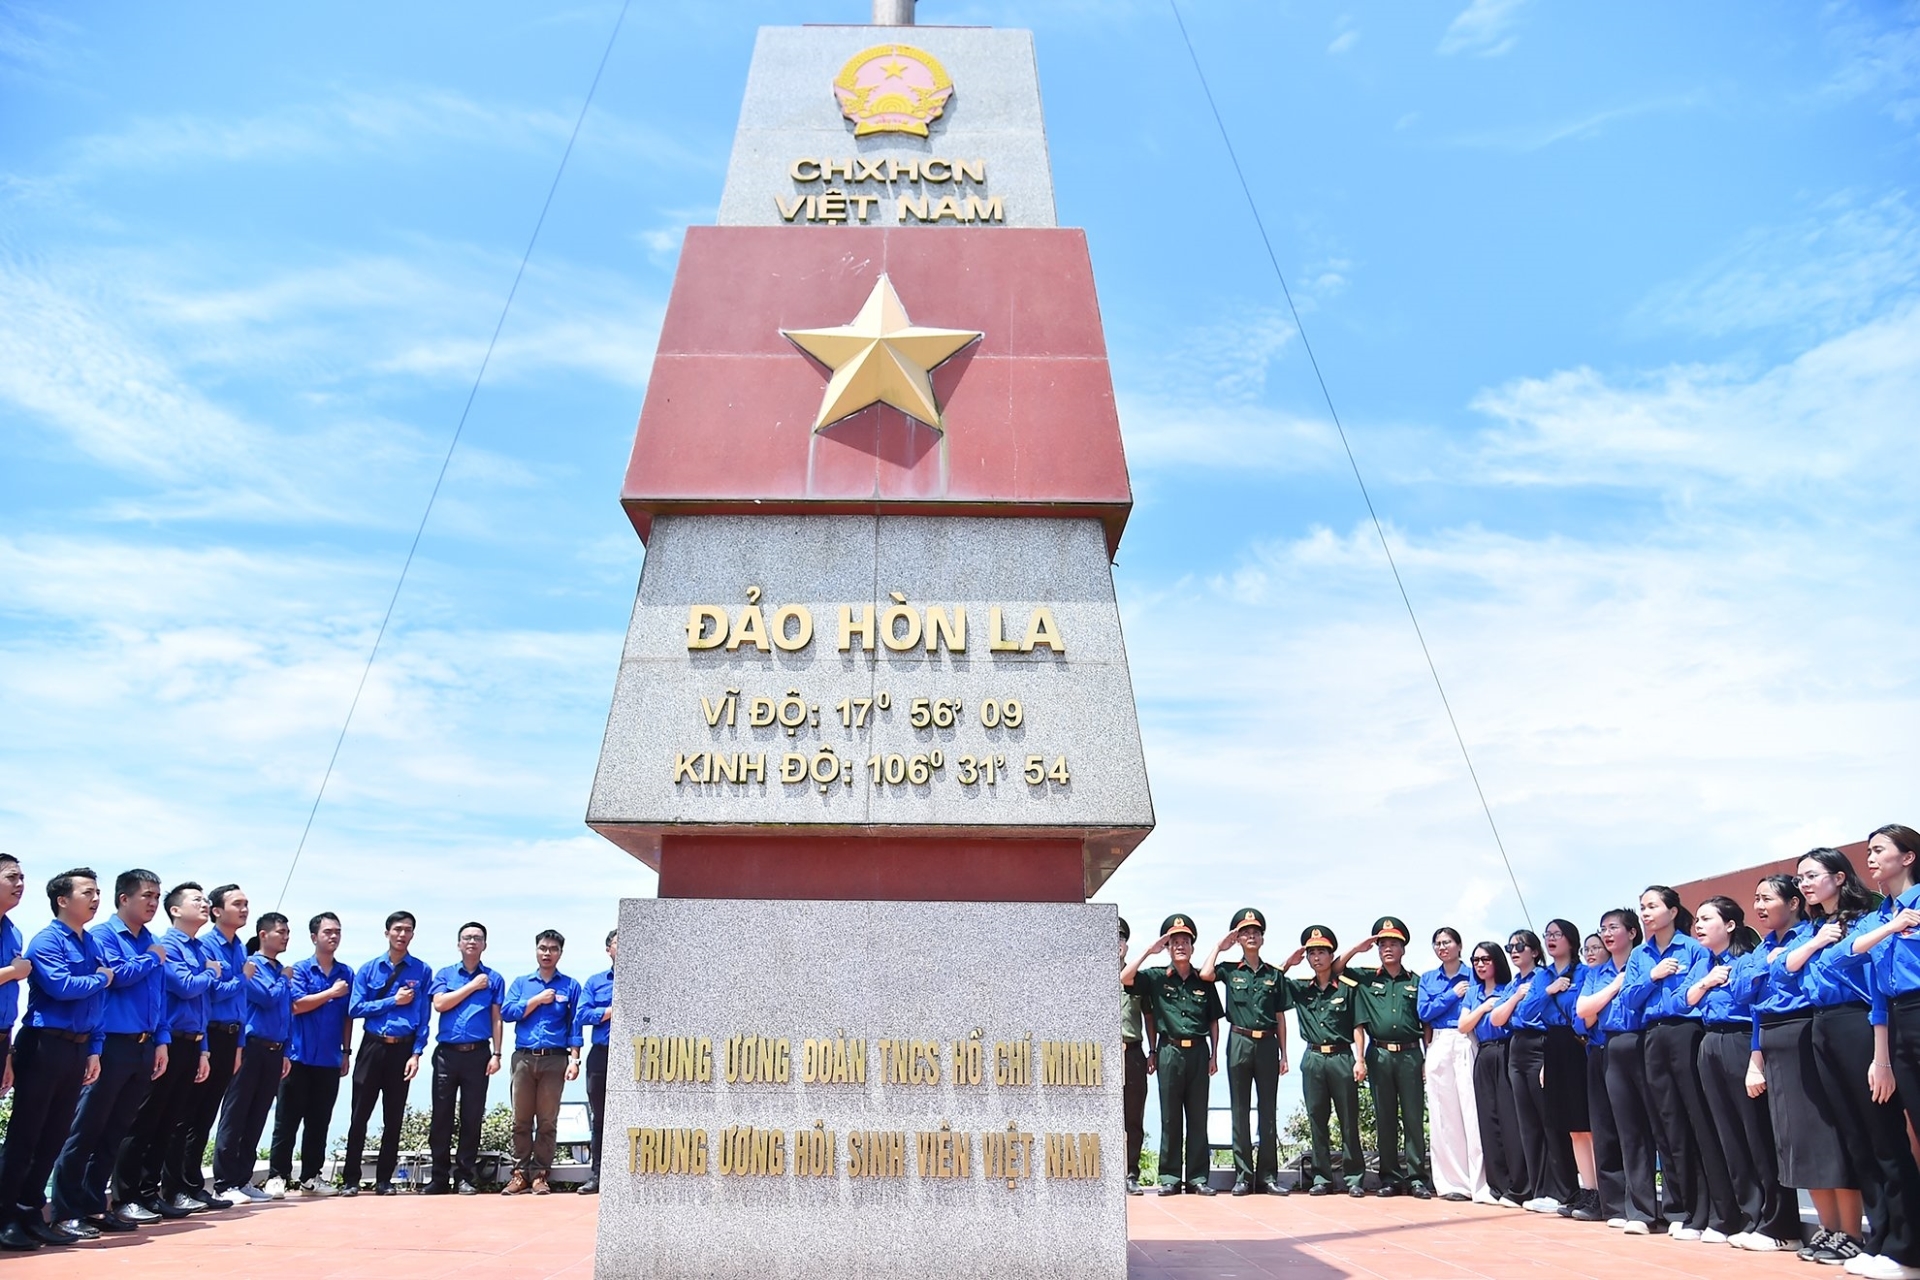 Một trong những hoạt động quan trọng của Đoàn viên thanh niên các cơ quan thuộc Cụm hoạt động số III - Đoàn khối Các cơ quan Trung ương và Tỉnh đoàn Quảng Bình thực hiện tại Đảo La là lễ chào cờ tại Cột cờ Tổ quốc.